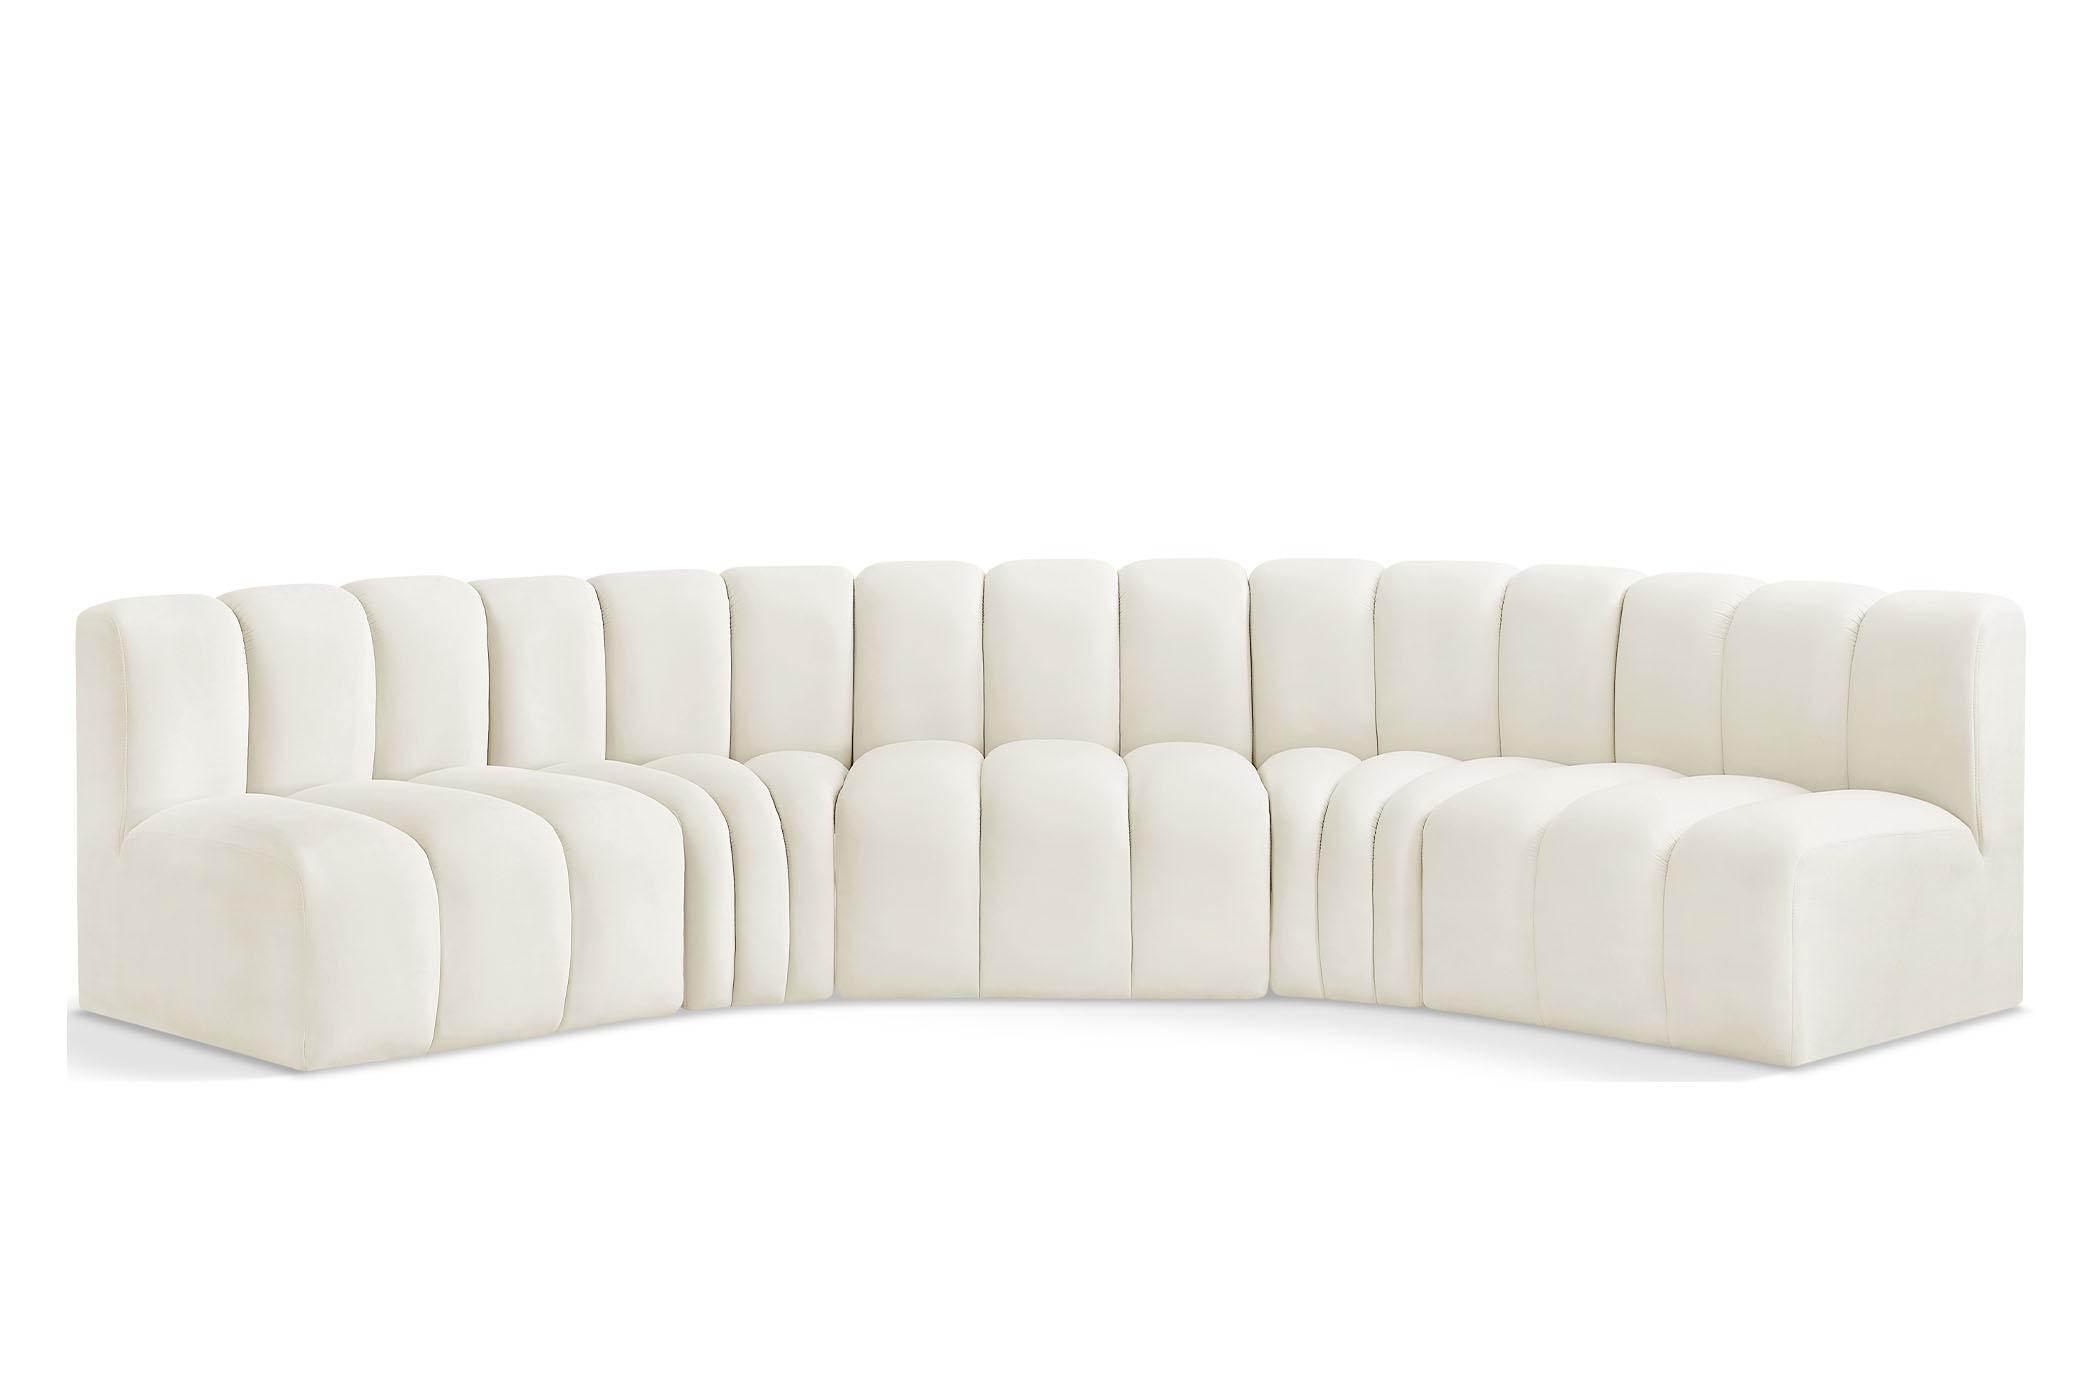 Contemporary, Modern Modular Sectional Sofa ARC 103Cream-S5A 103Cream-S5A in Cream Velvet